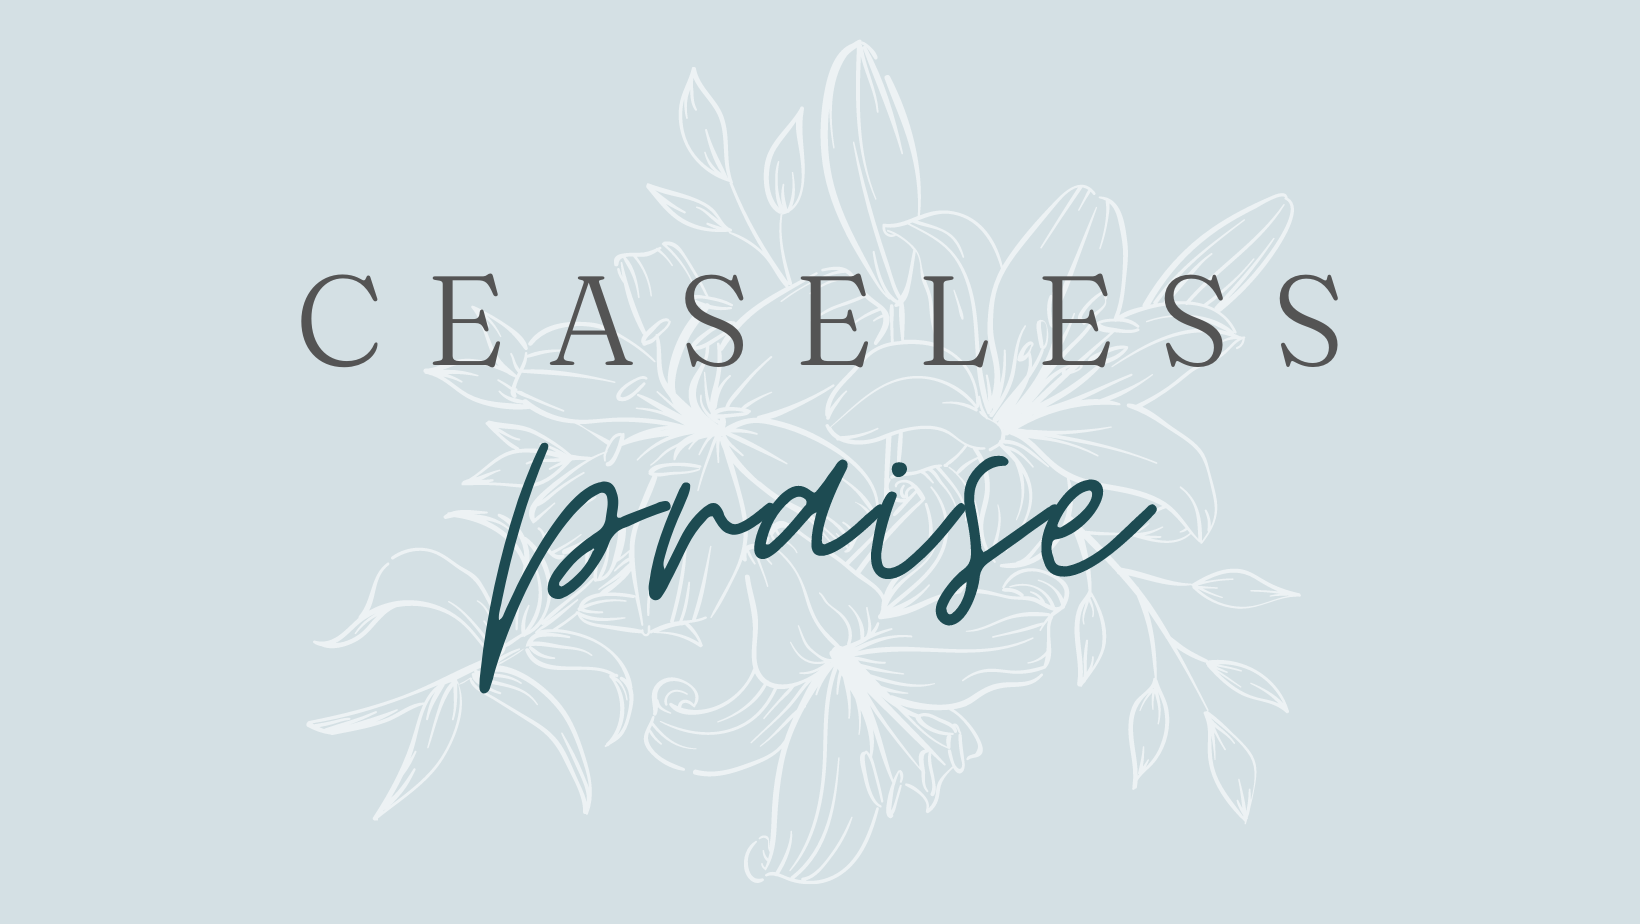 Ceaseless Praise